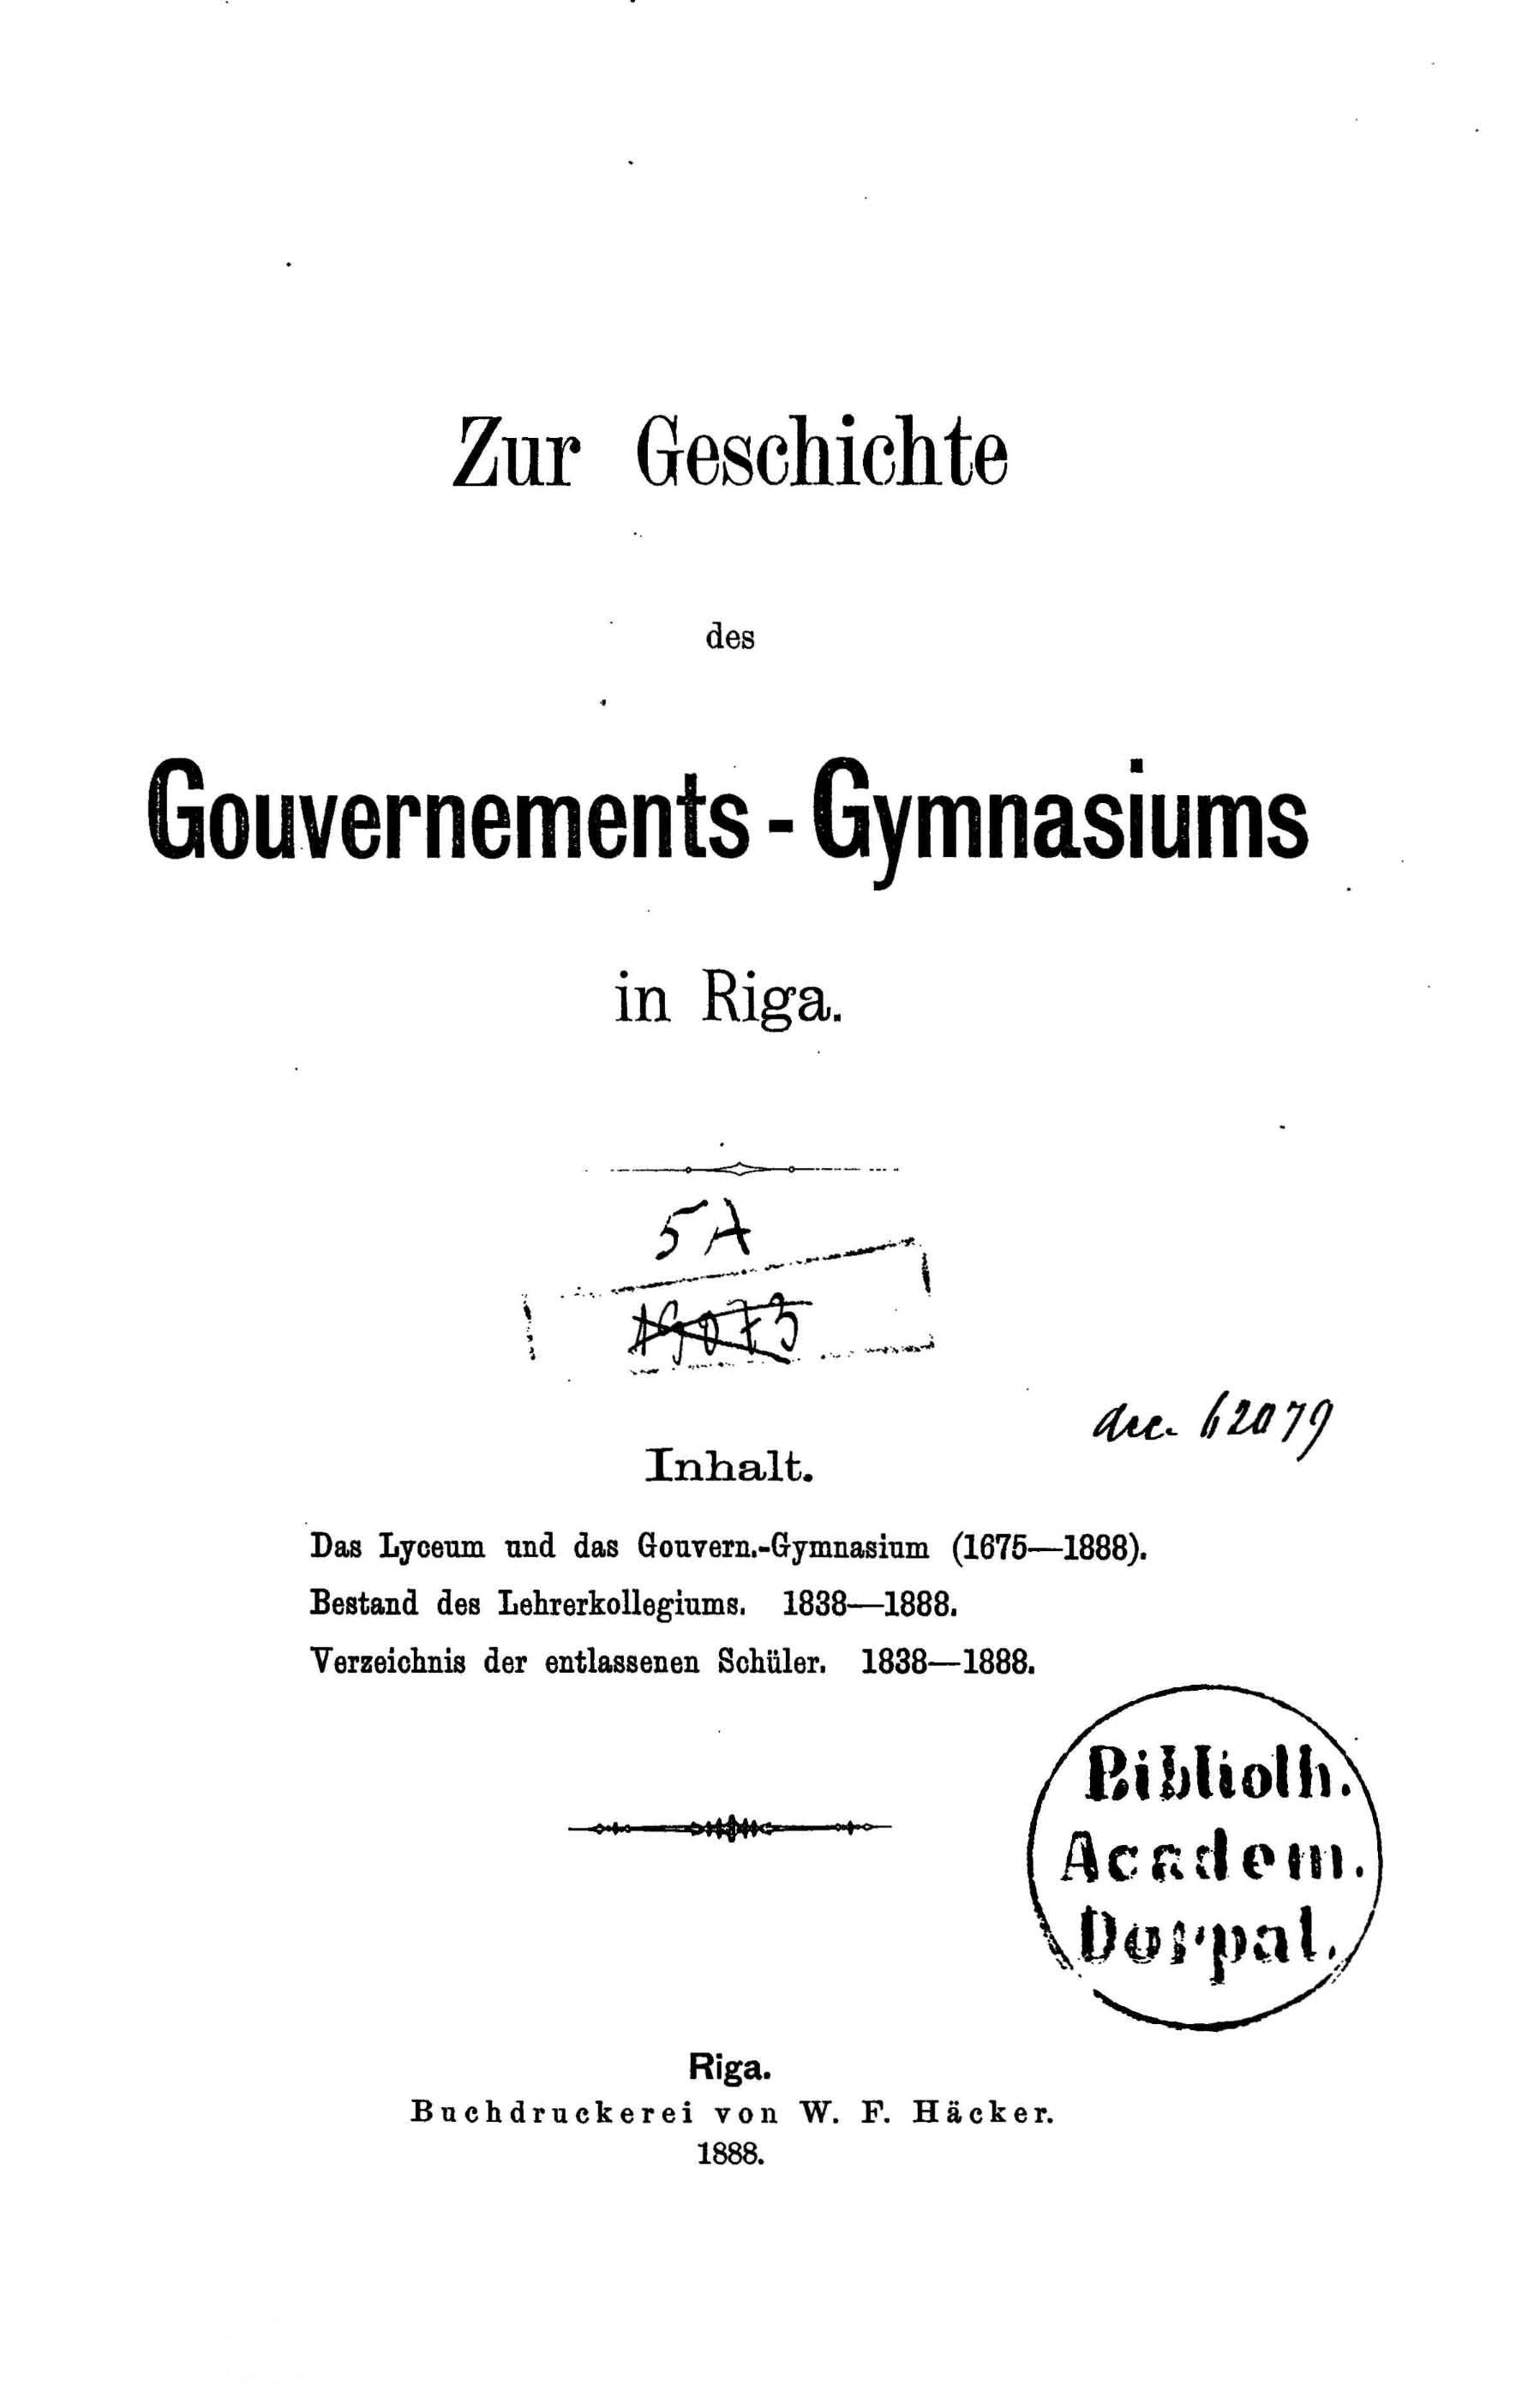 Zur Geschichte des Gouvernements-Gymnasiums in Riga (1888) | 2. Titelblatt